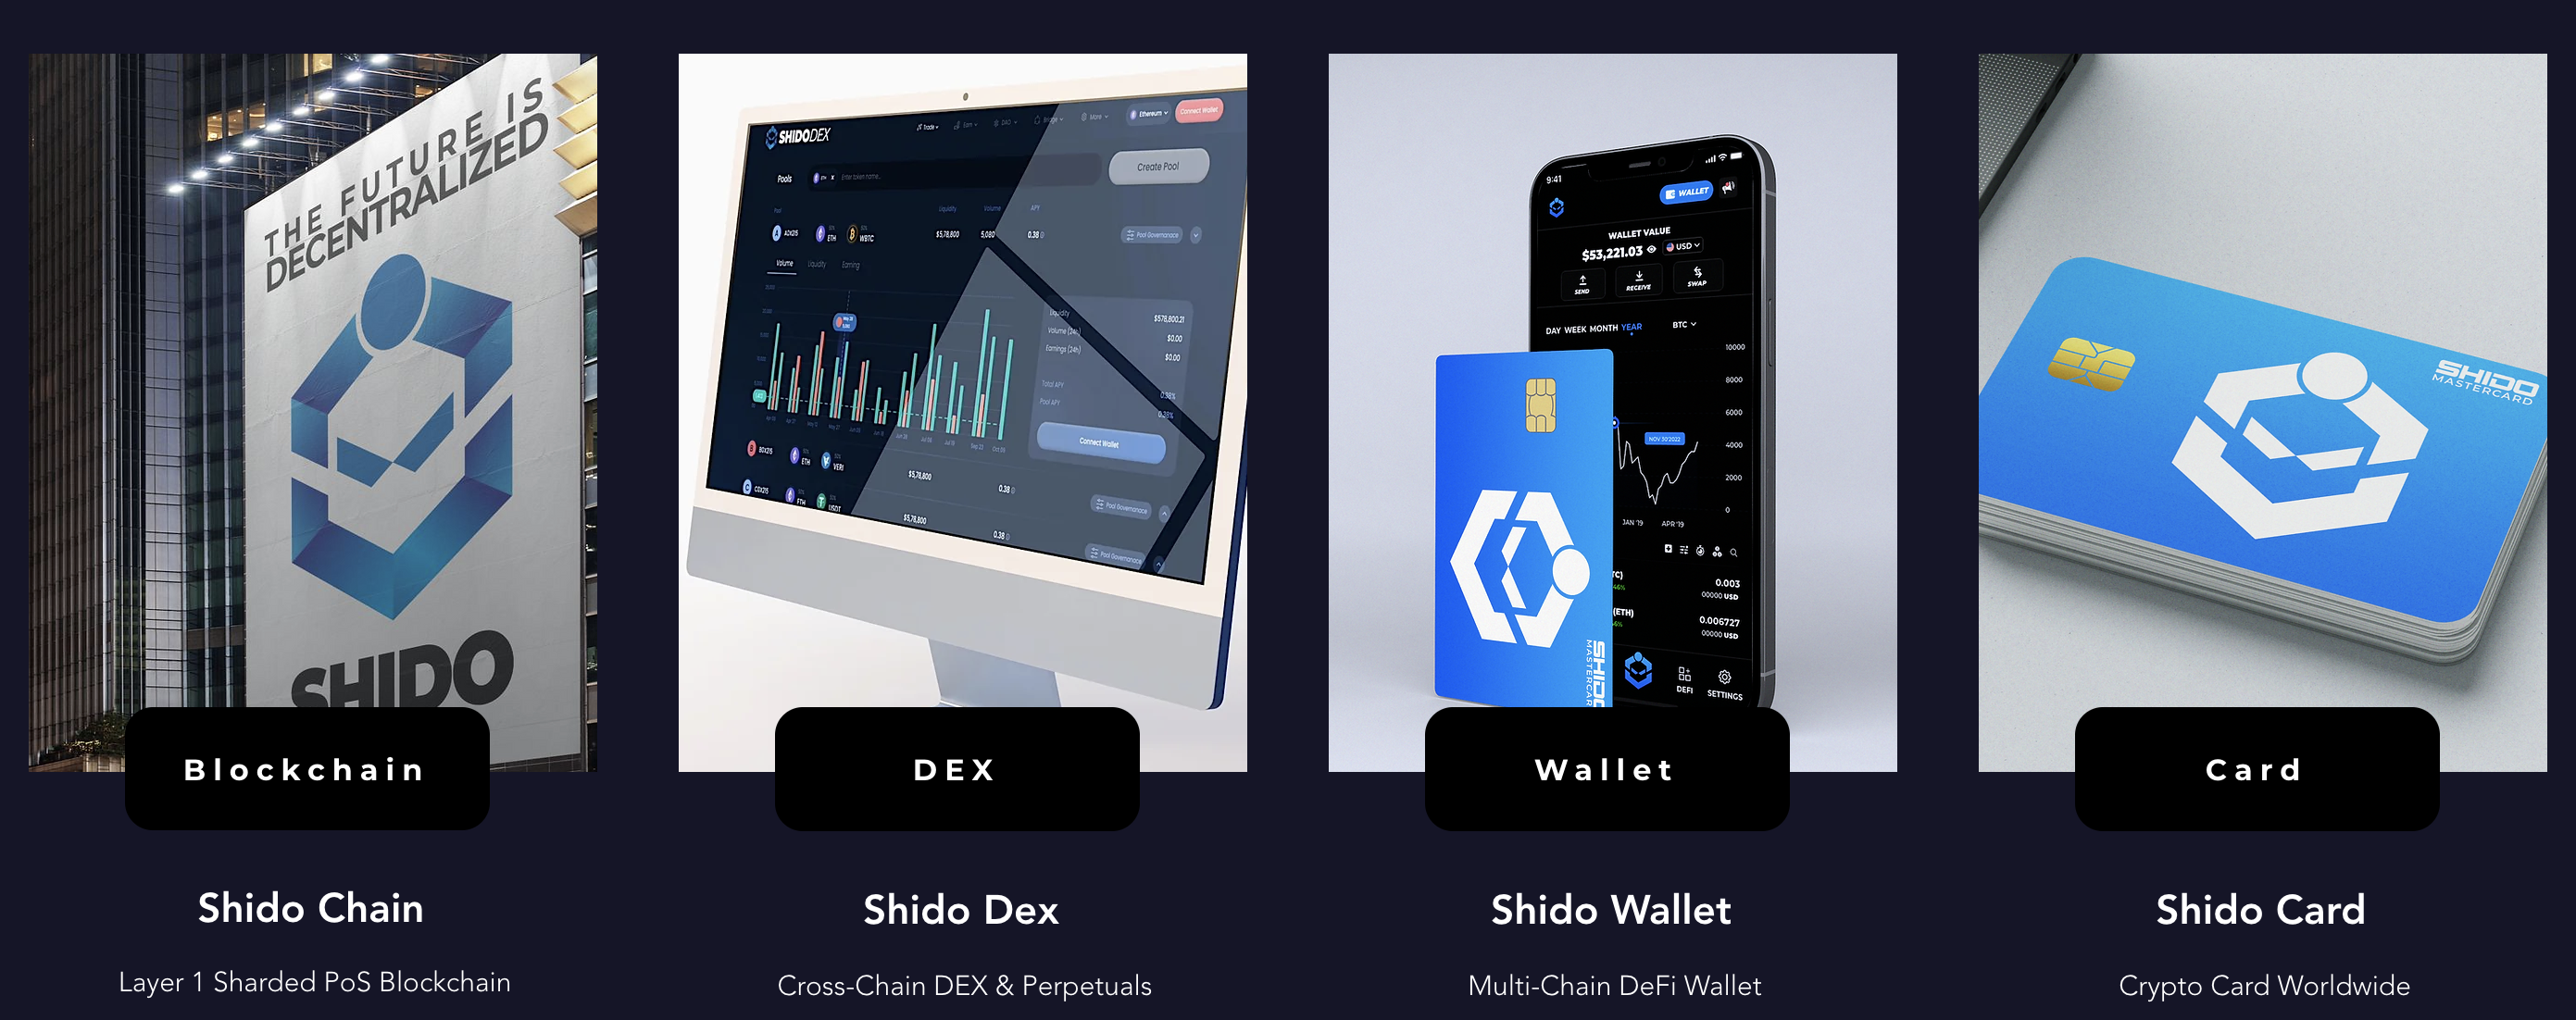 Shido Crypto Project Product Line: Shido Chain, Shido DEX, Shido Wallet, and Shido Card.